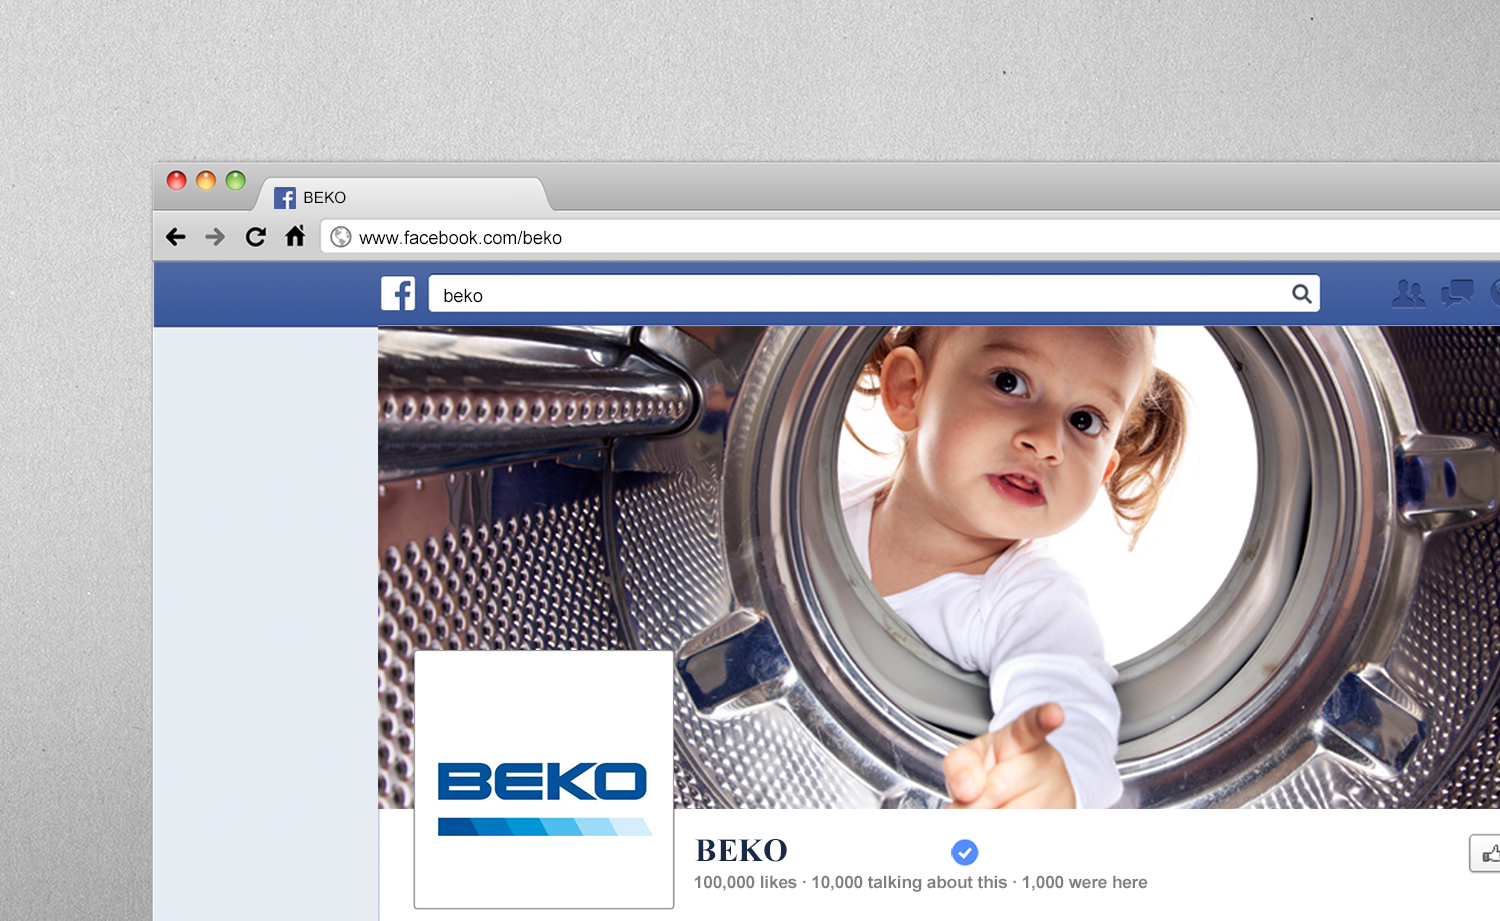 Biuro Podróży Reklamy zadba o obecność marki Beko na Facebooku